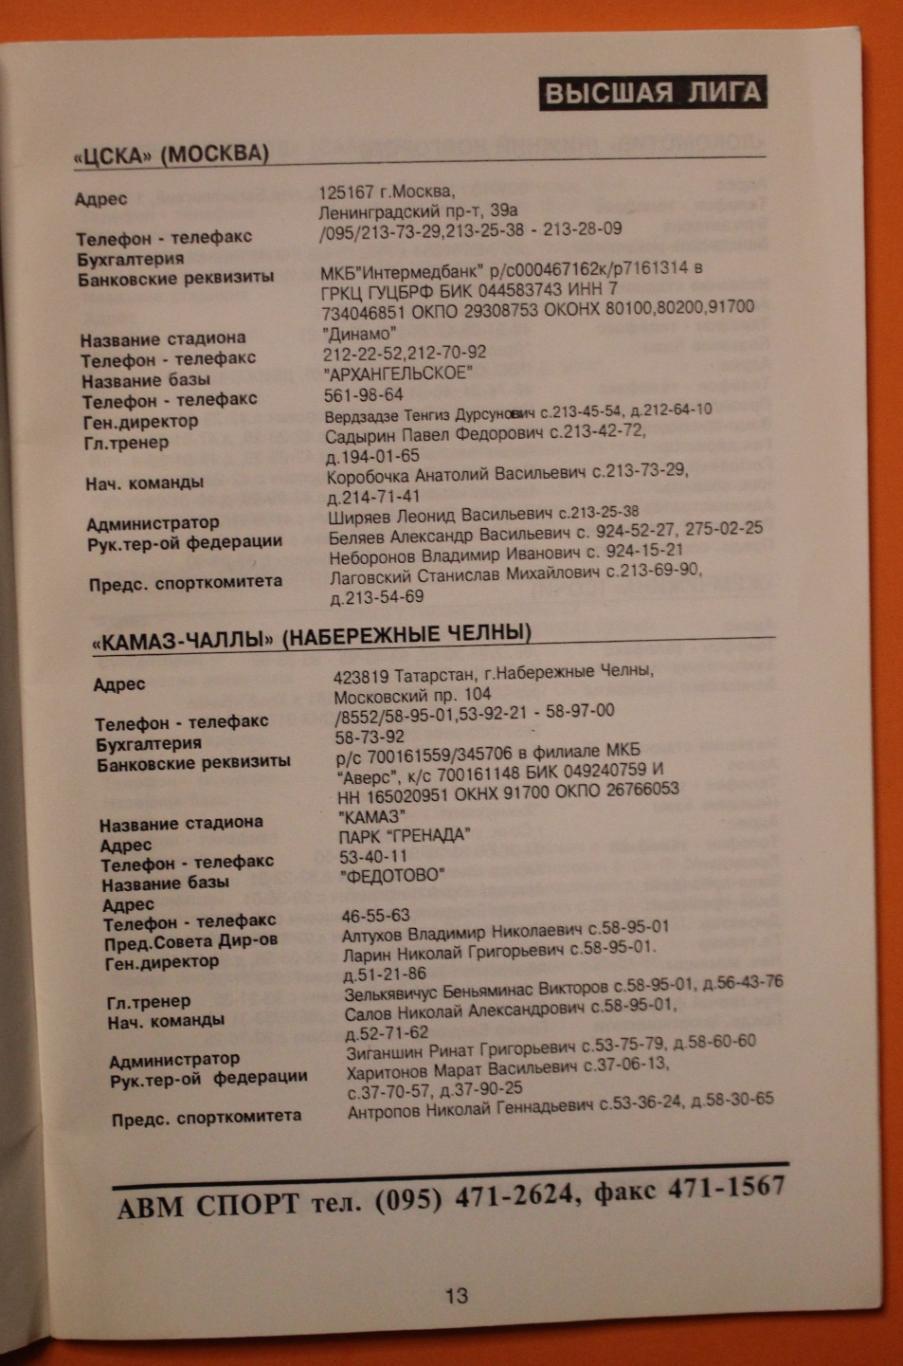 Профессиональная футбольная лига 1997. Телефонный справочник 2